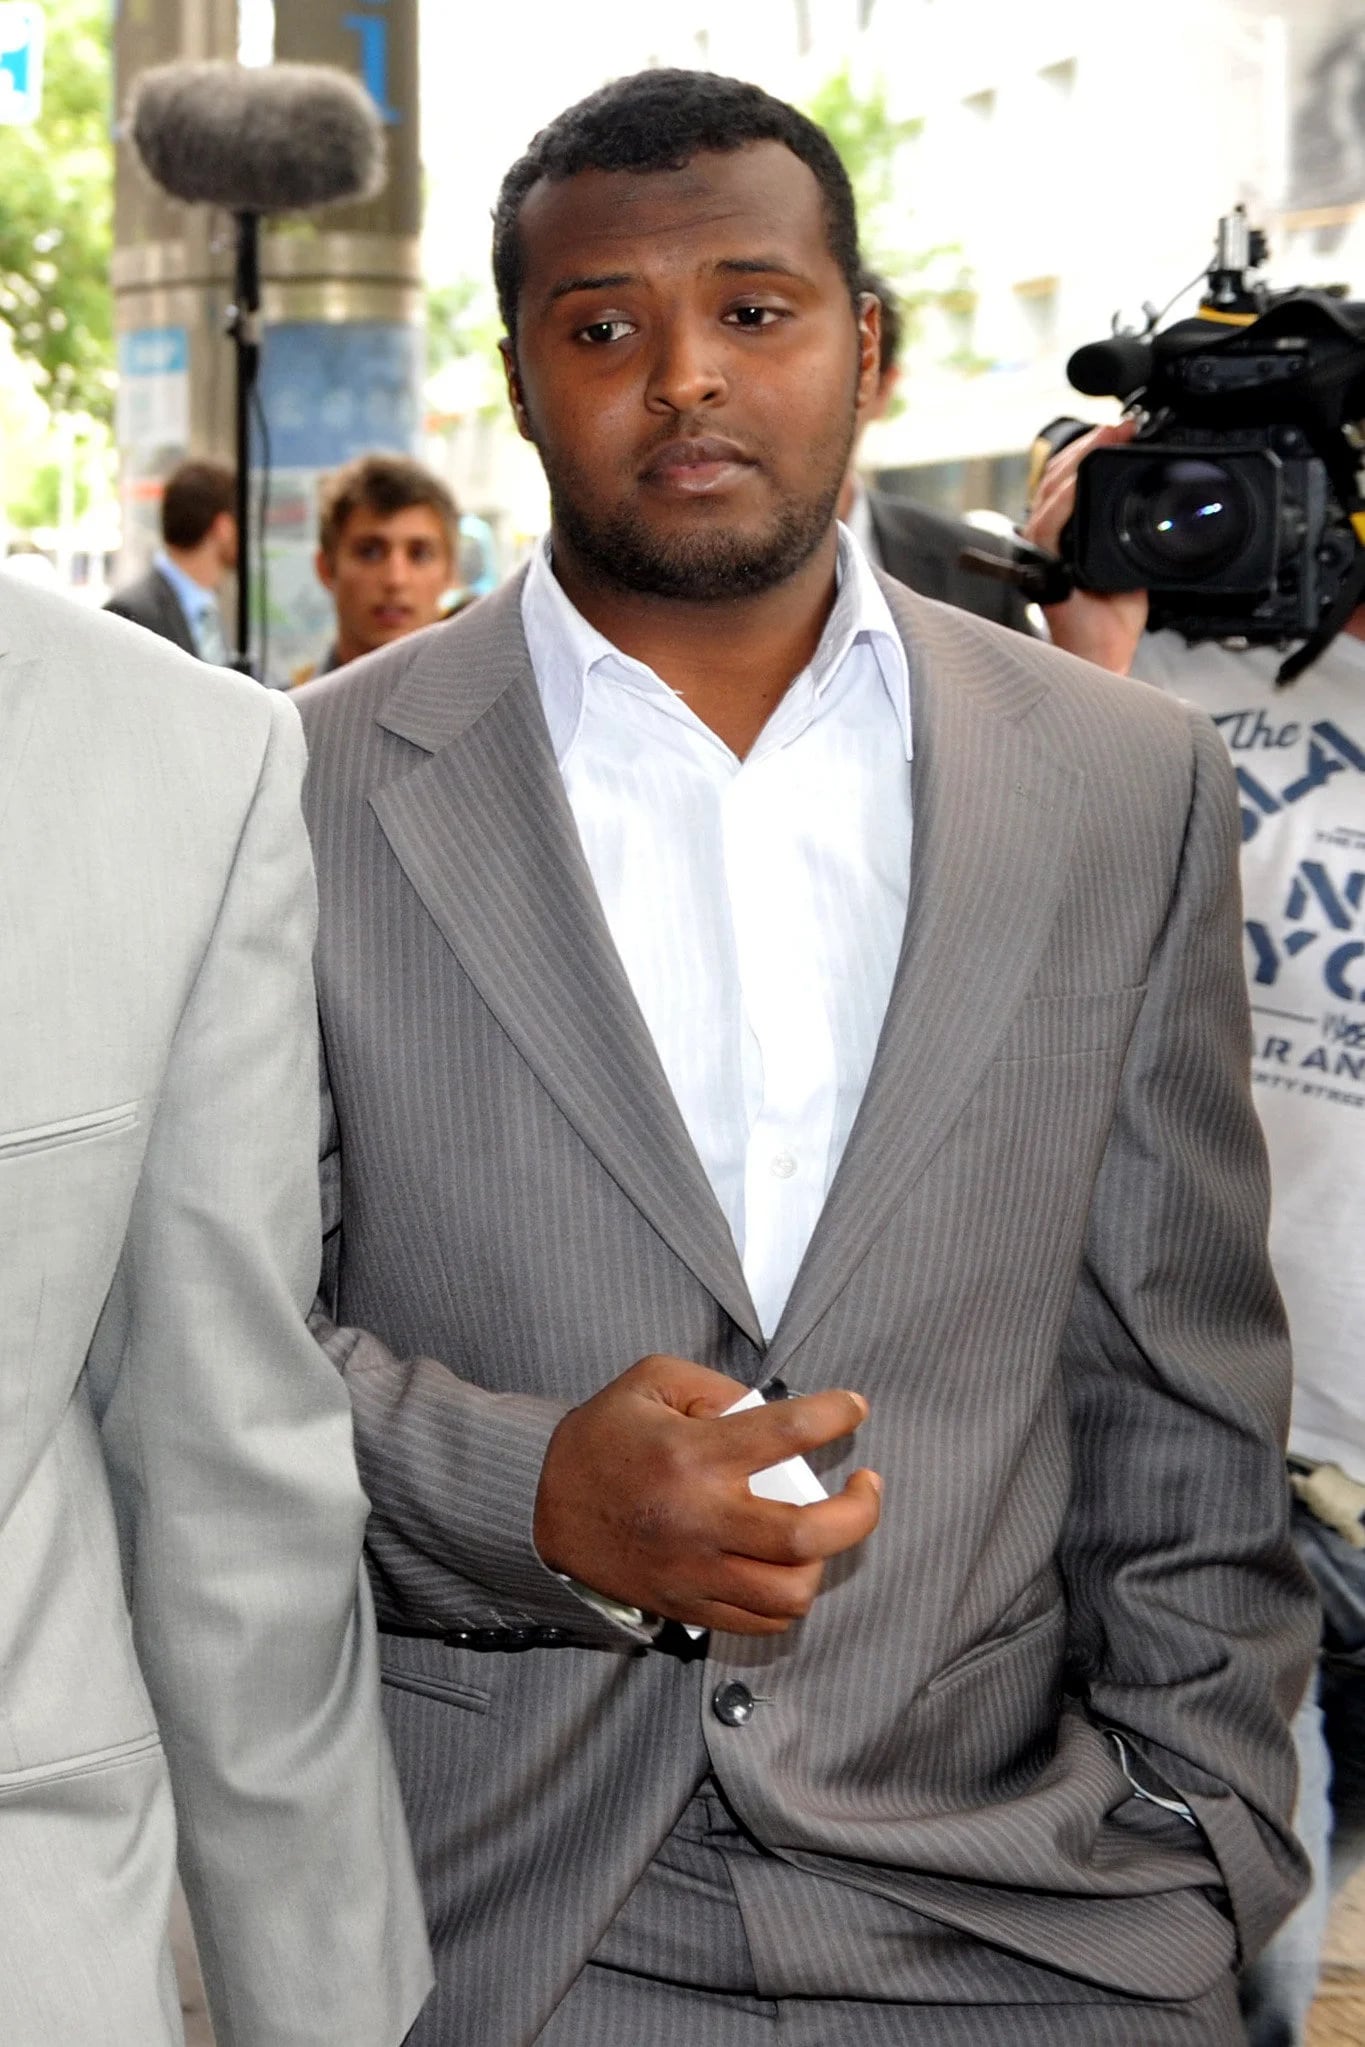 Yacqub Khayre saliendo de la corte en 2010 (Reuters)